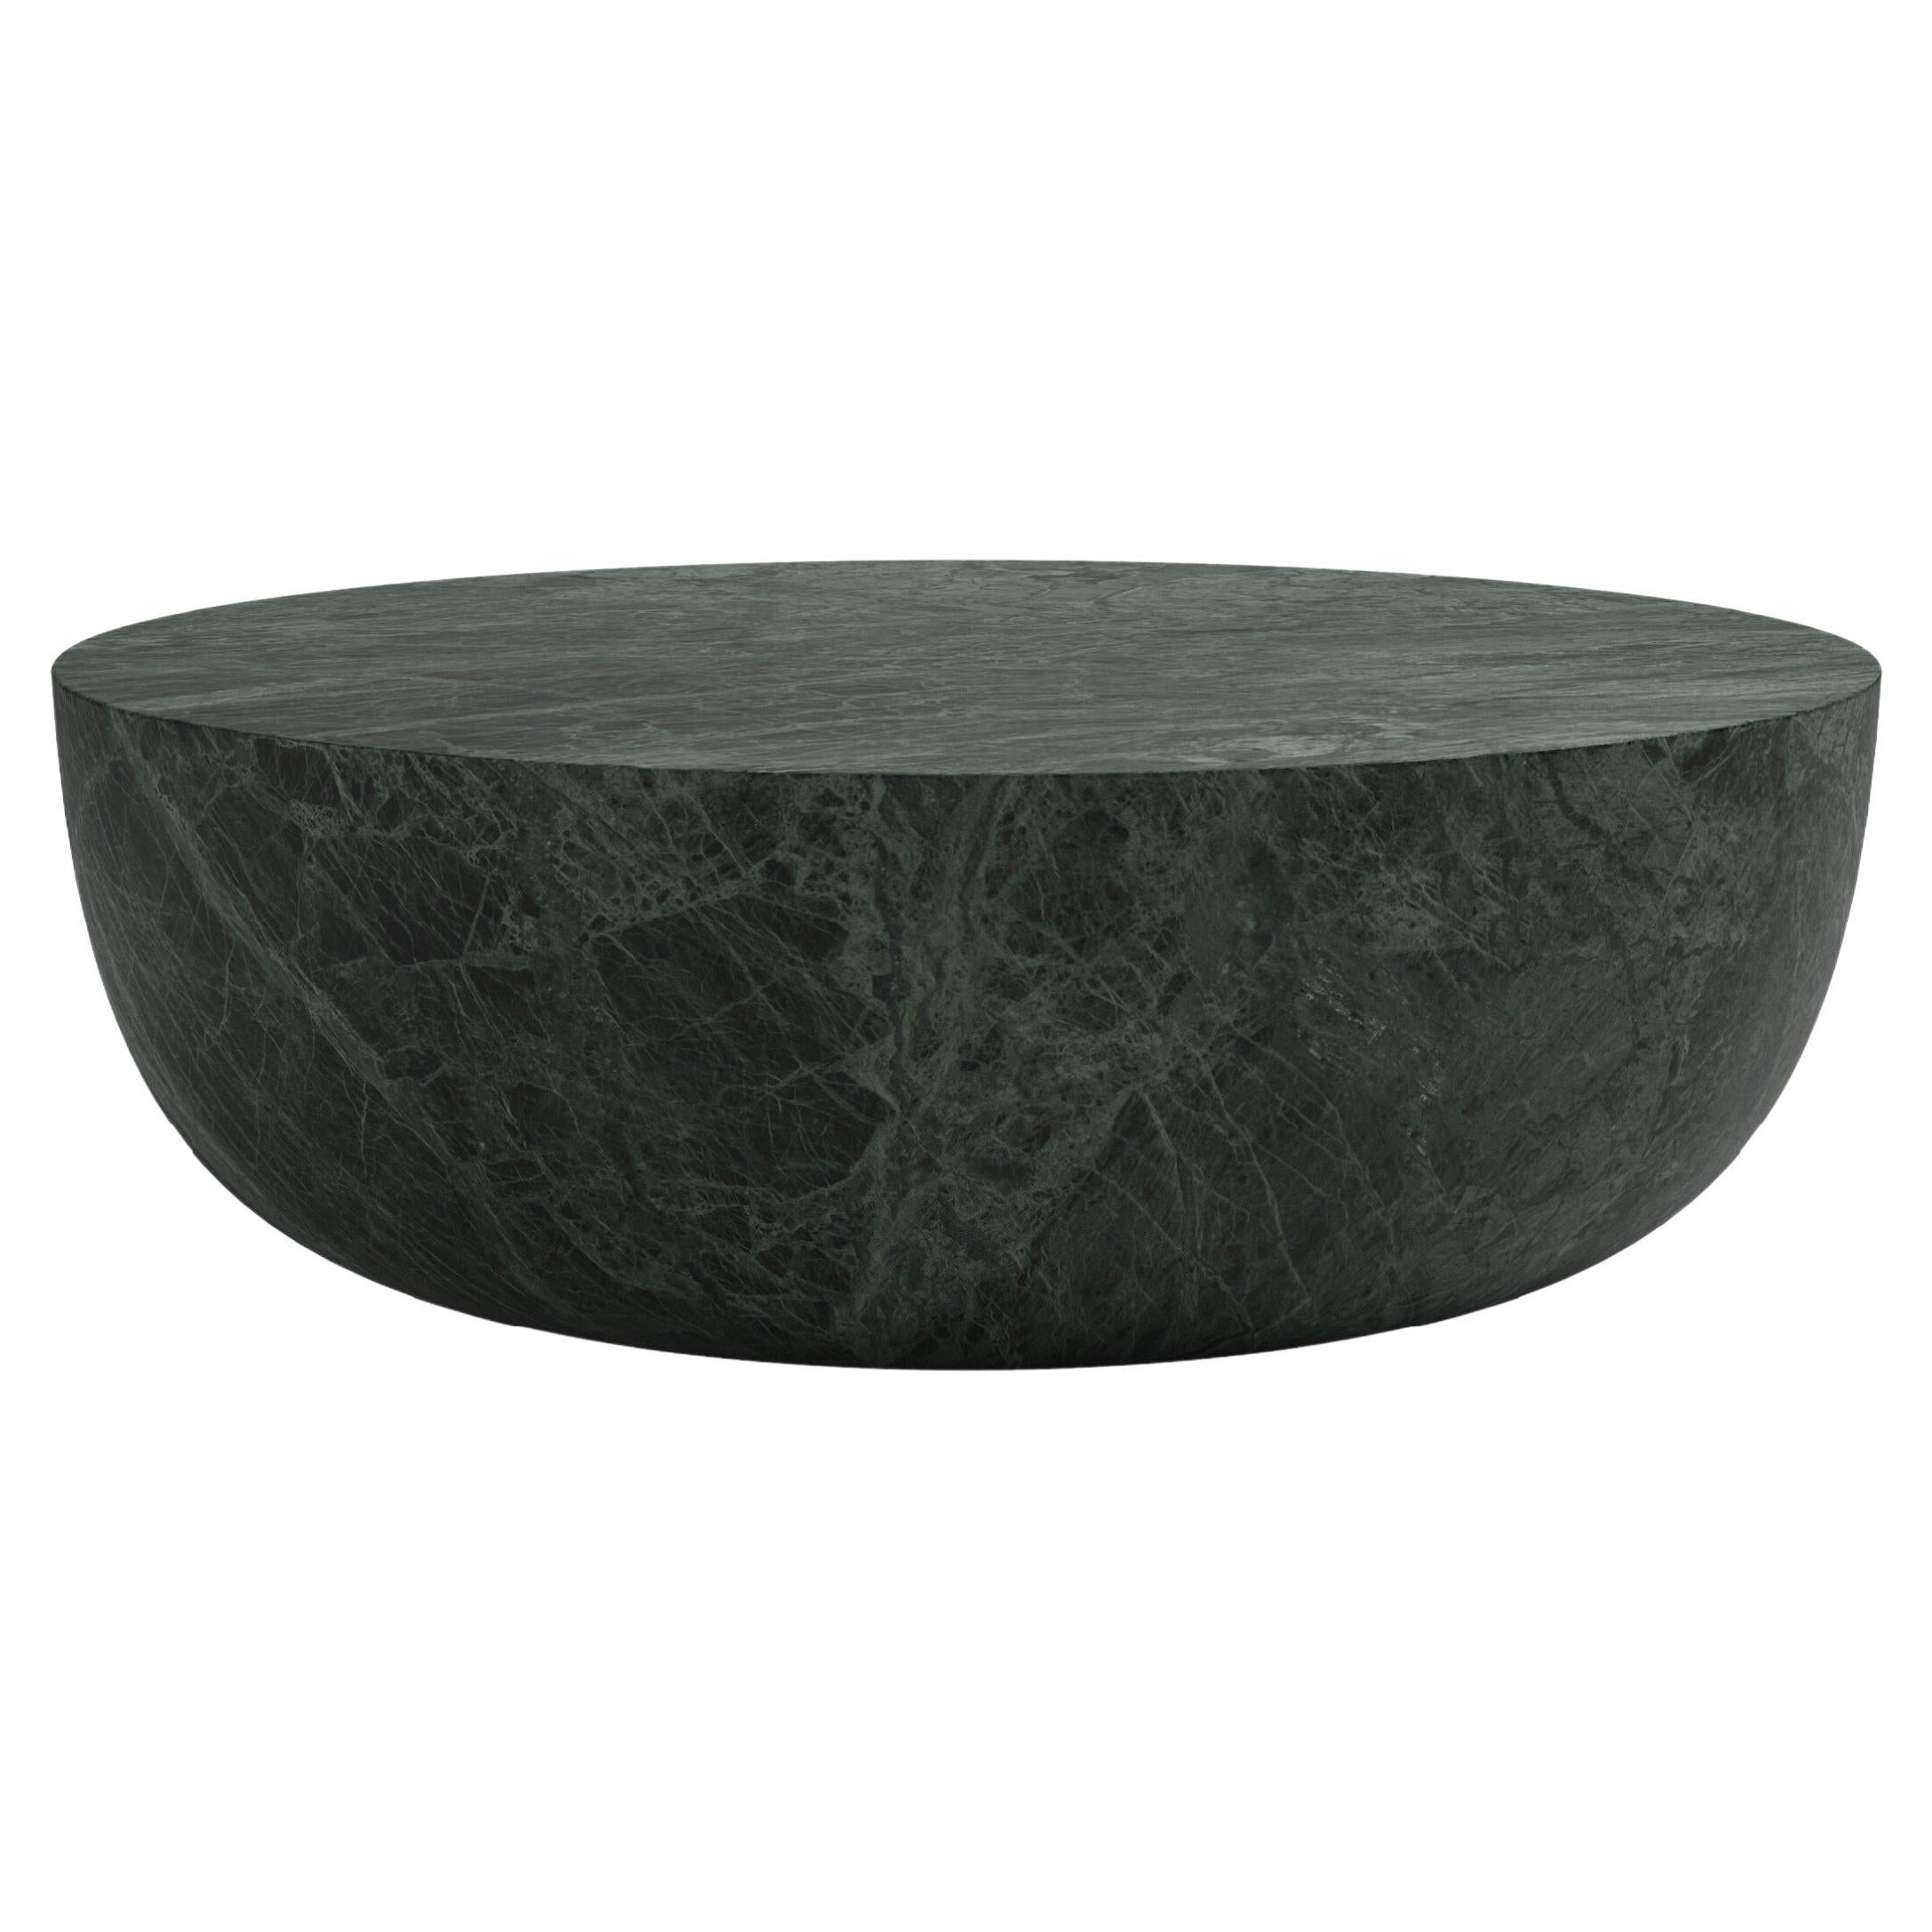 FORM(LA) Sfera Round Coffee Table 60”L x 60”W x 16”H Verde Guatemala Marble For Sale